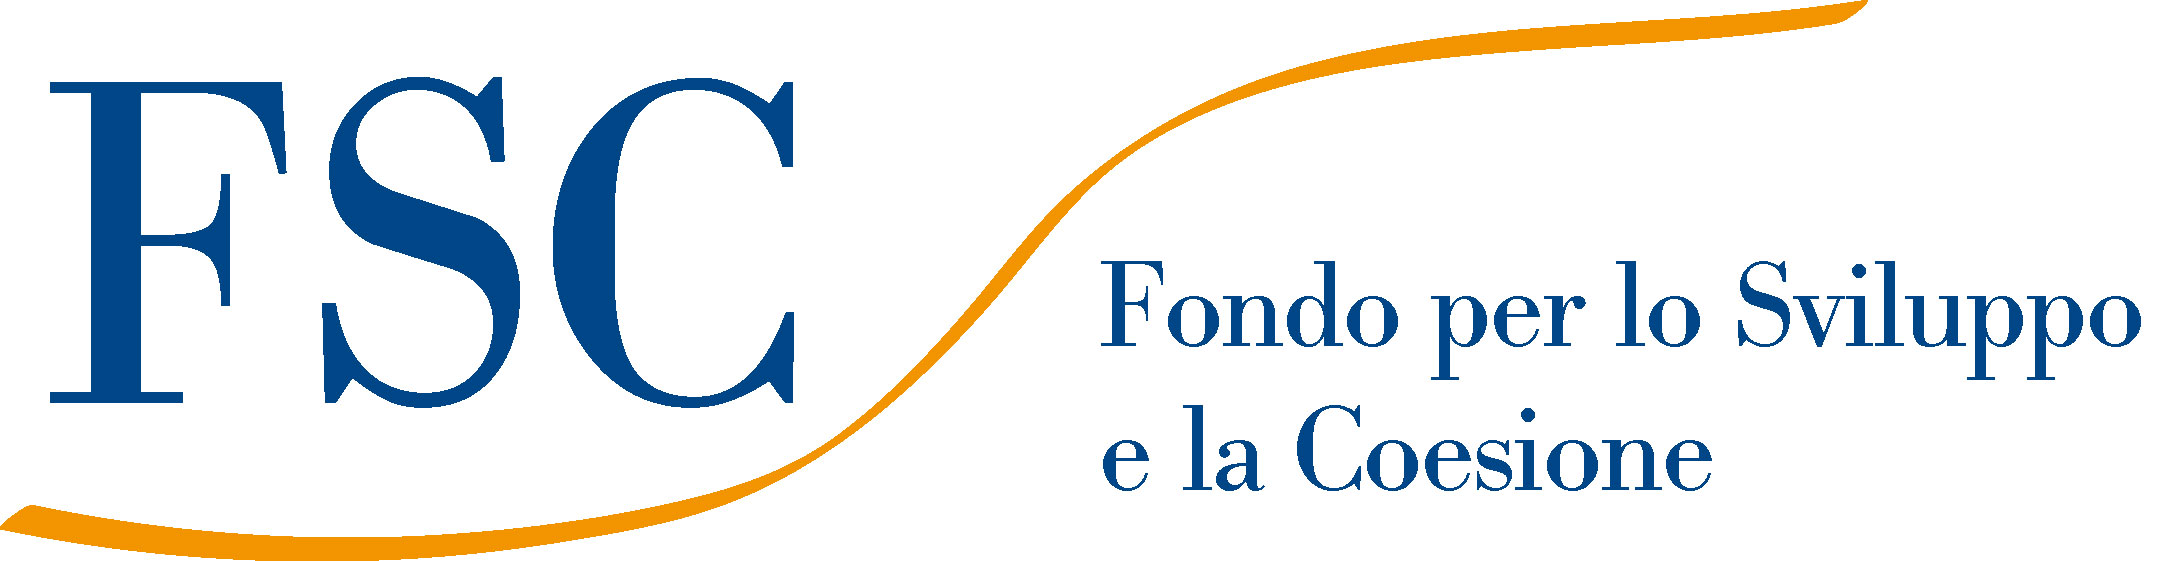 Logo_FSC